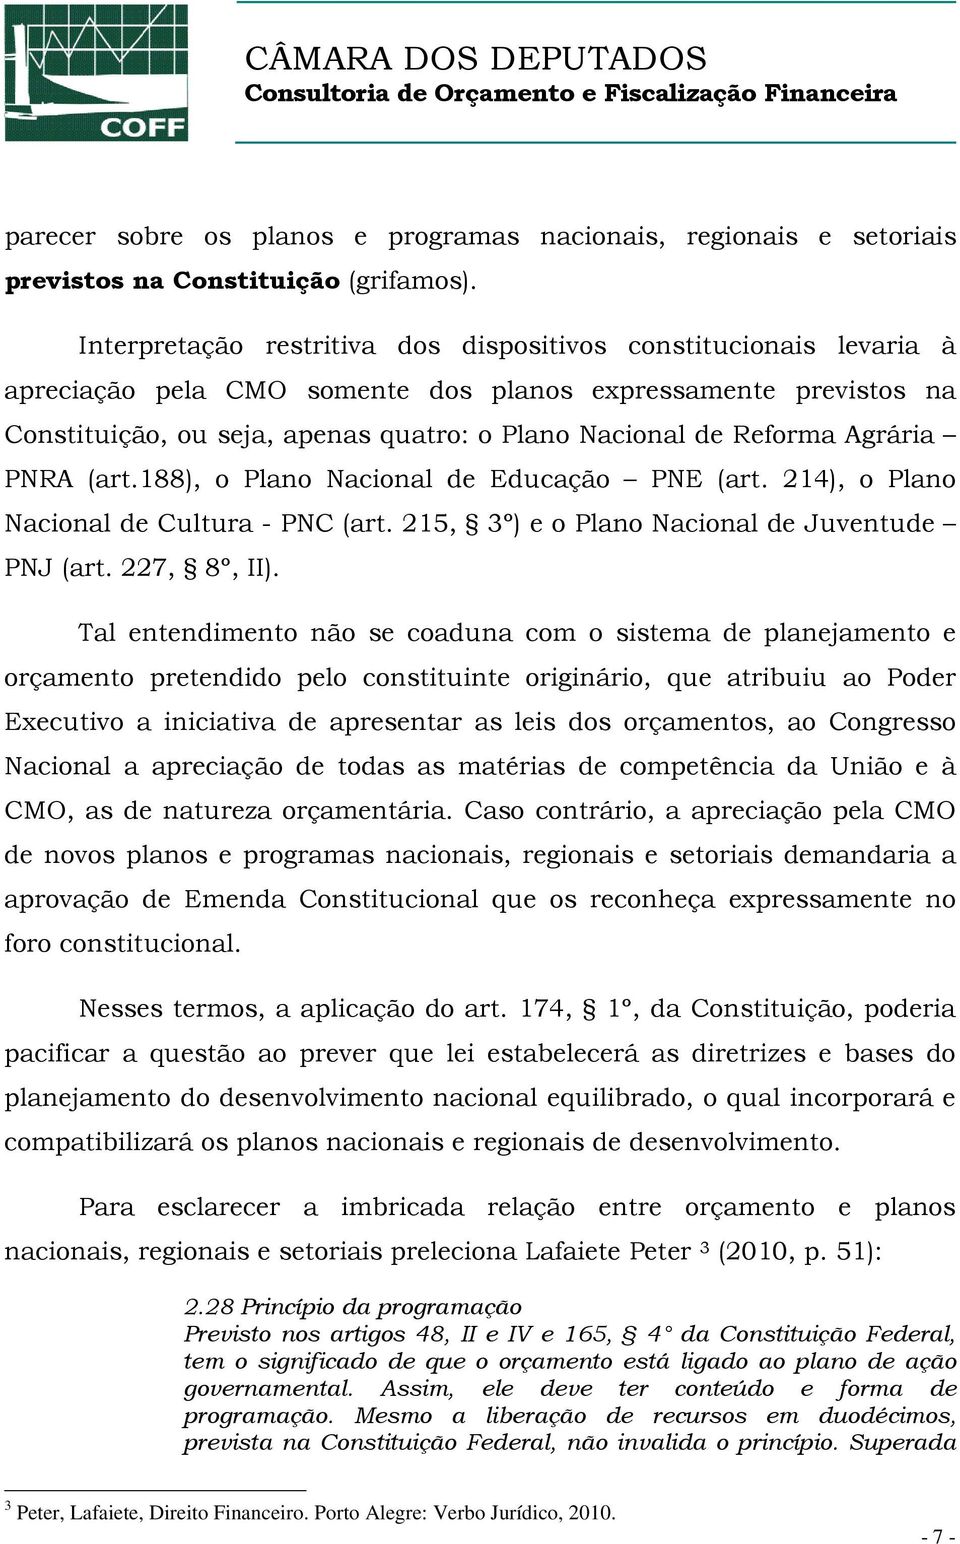 Agrária PNRA (art.188), o Plano Nacional de Educação PNE (art. 214), o Plano Nacional de Cultura - PNC (art. 215, 3º) e o Plano Nacional de Juventude PNJ (art. 227, 8º, II).